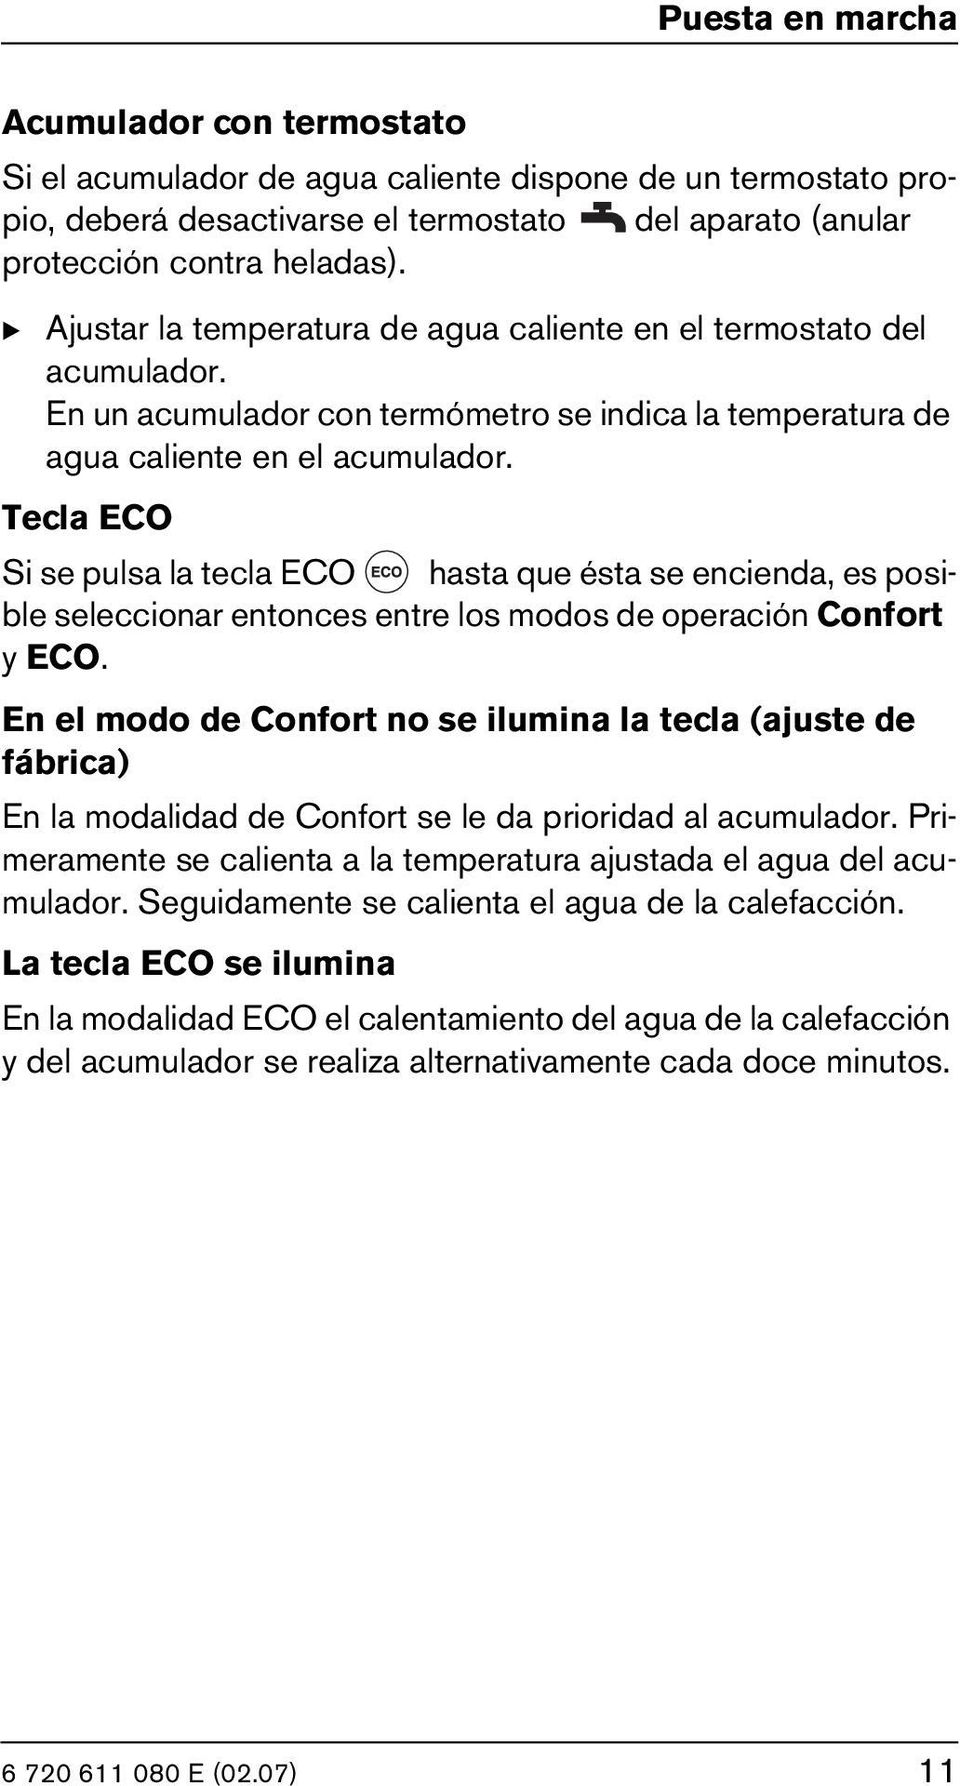 Tecla ECO Si se pulsa la tecla ECO hasta que ésta se encienda, es posible seleccionar entonces entre los modos de operación Confort y ECO.